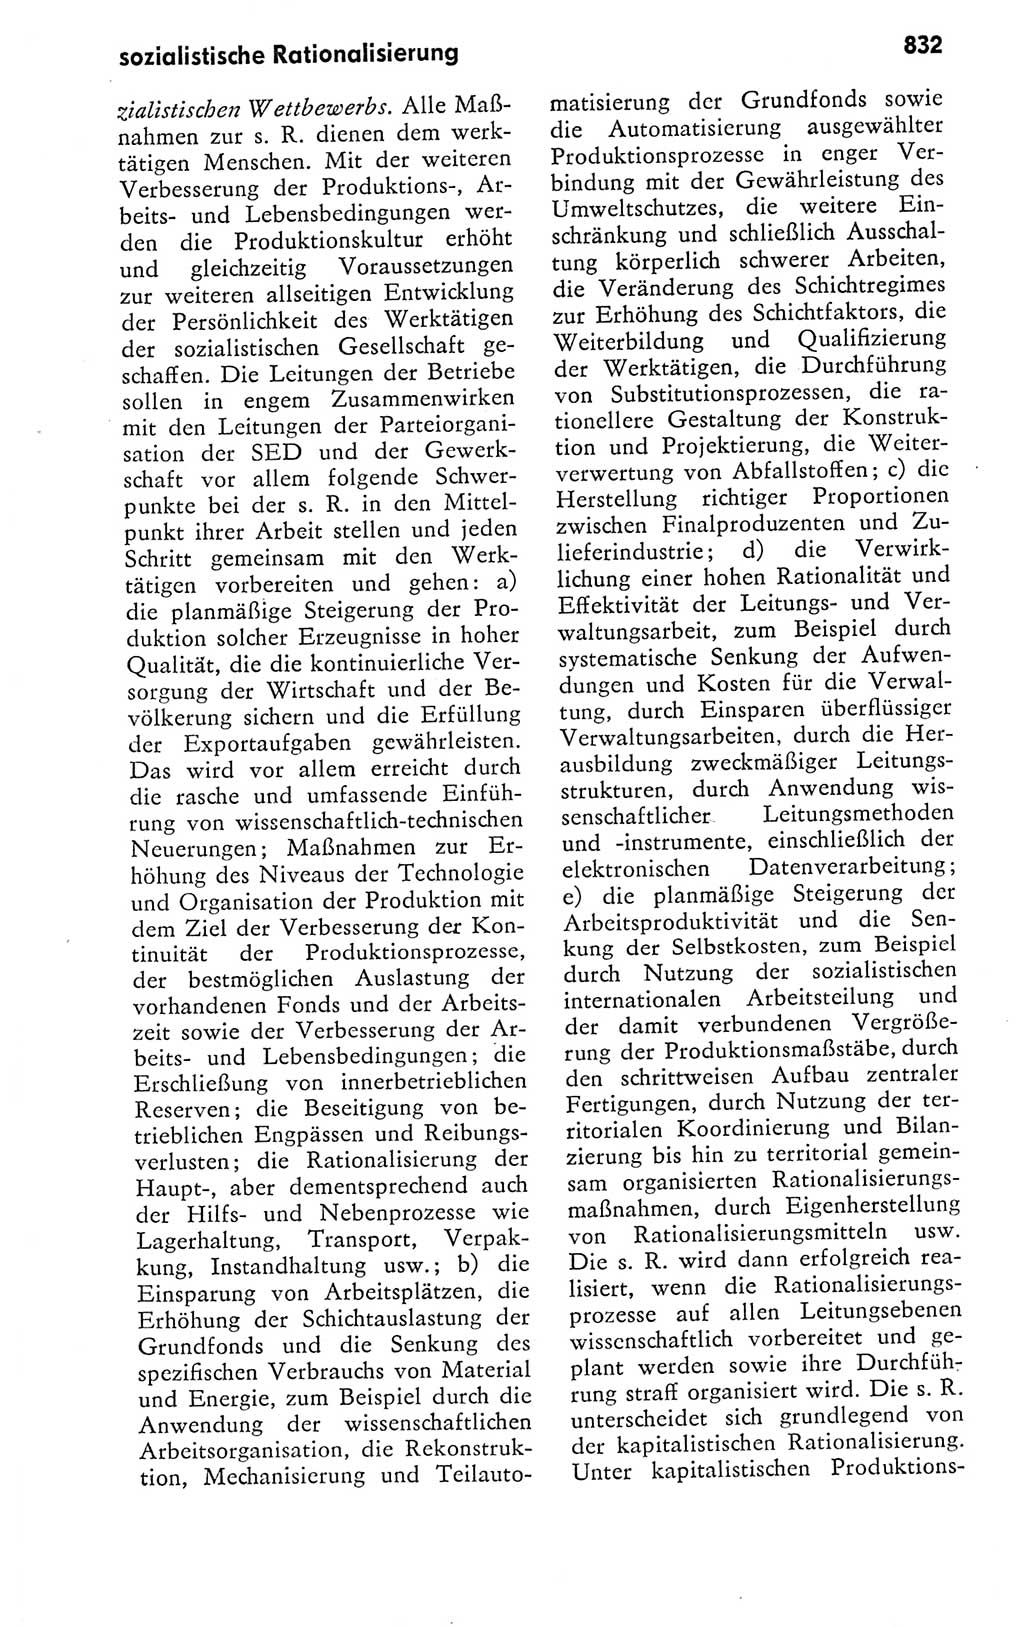 Kleines politisches Wörterbuch [Deutsche Demokratische Republik (DDR)] 1978, Seite 832 (Kl. pol. Wb. DDR 1978, S. 832)